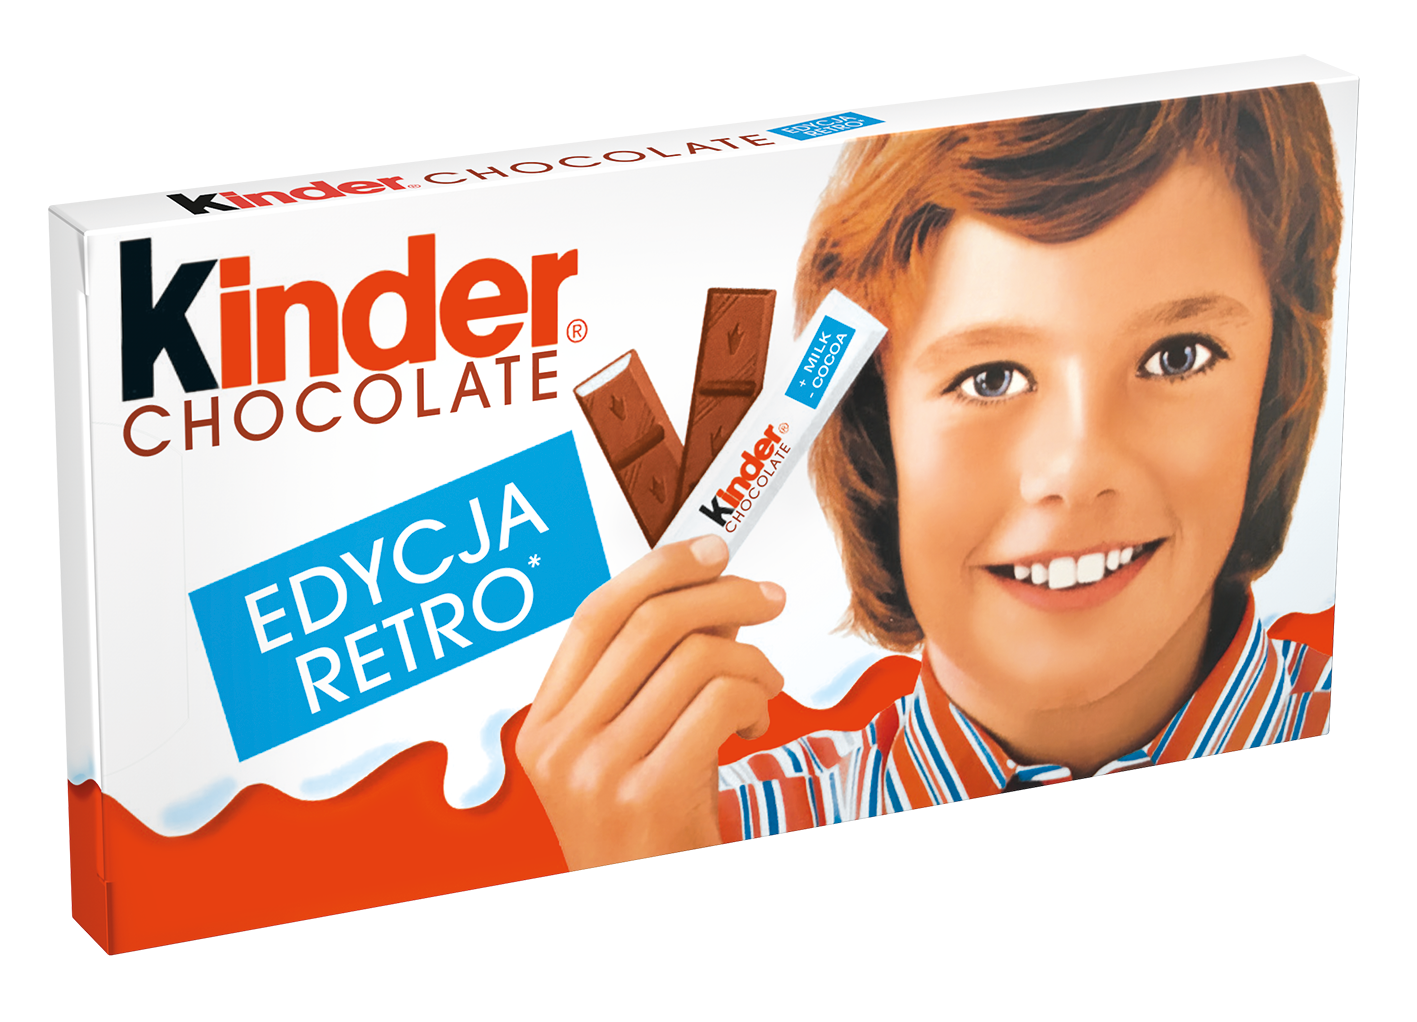 Kinder Chocolate Edycja Retro: Mamy Wspomnienia!